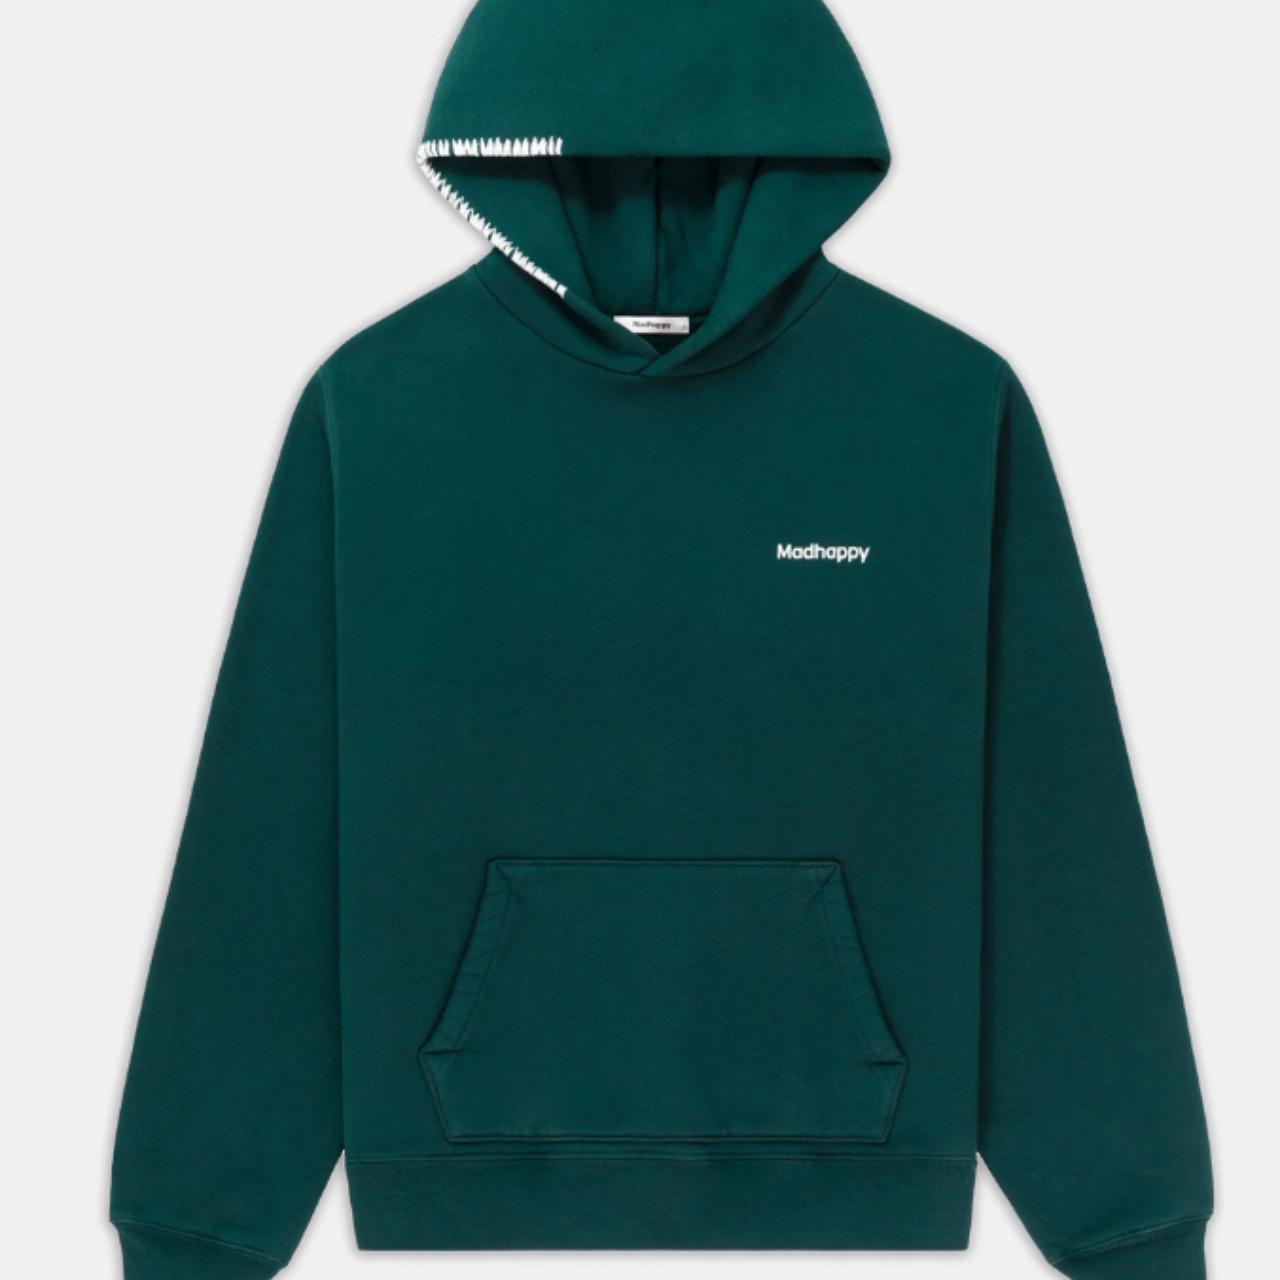 Madhappy classics fleece hoodie in dark green size... - Depop